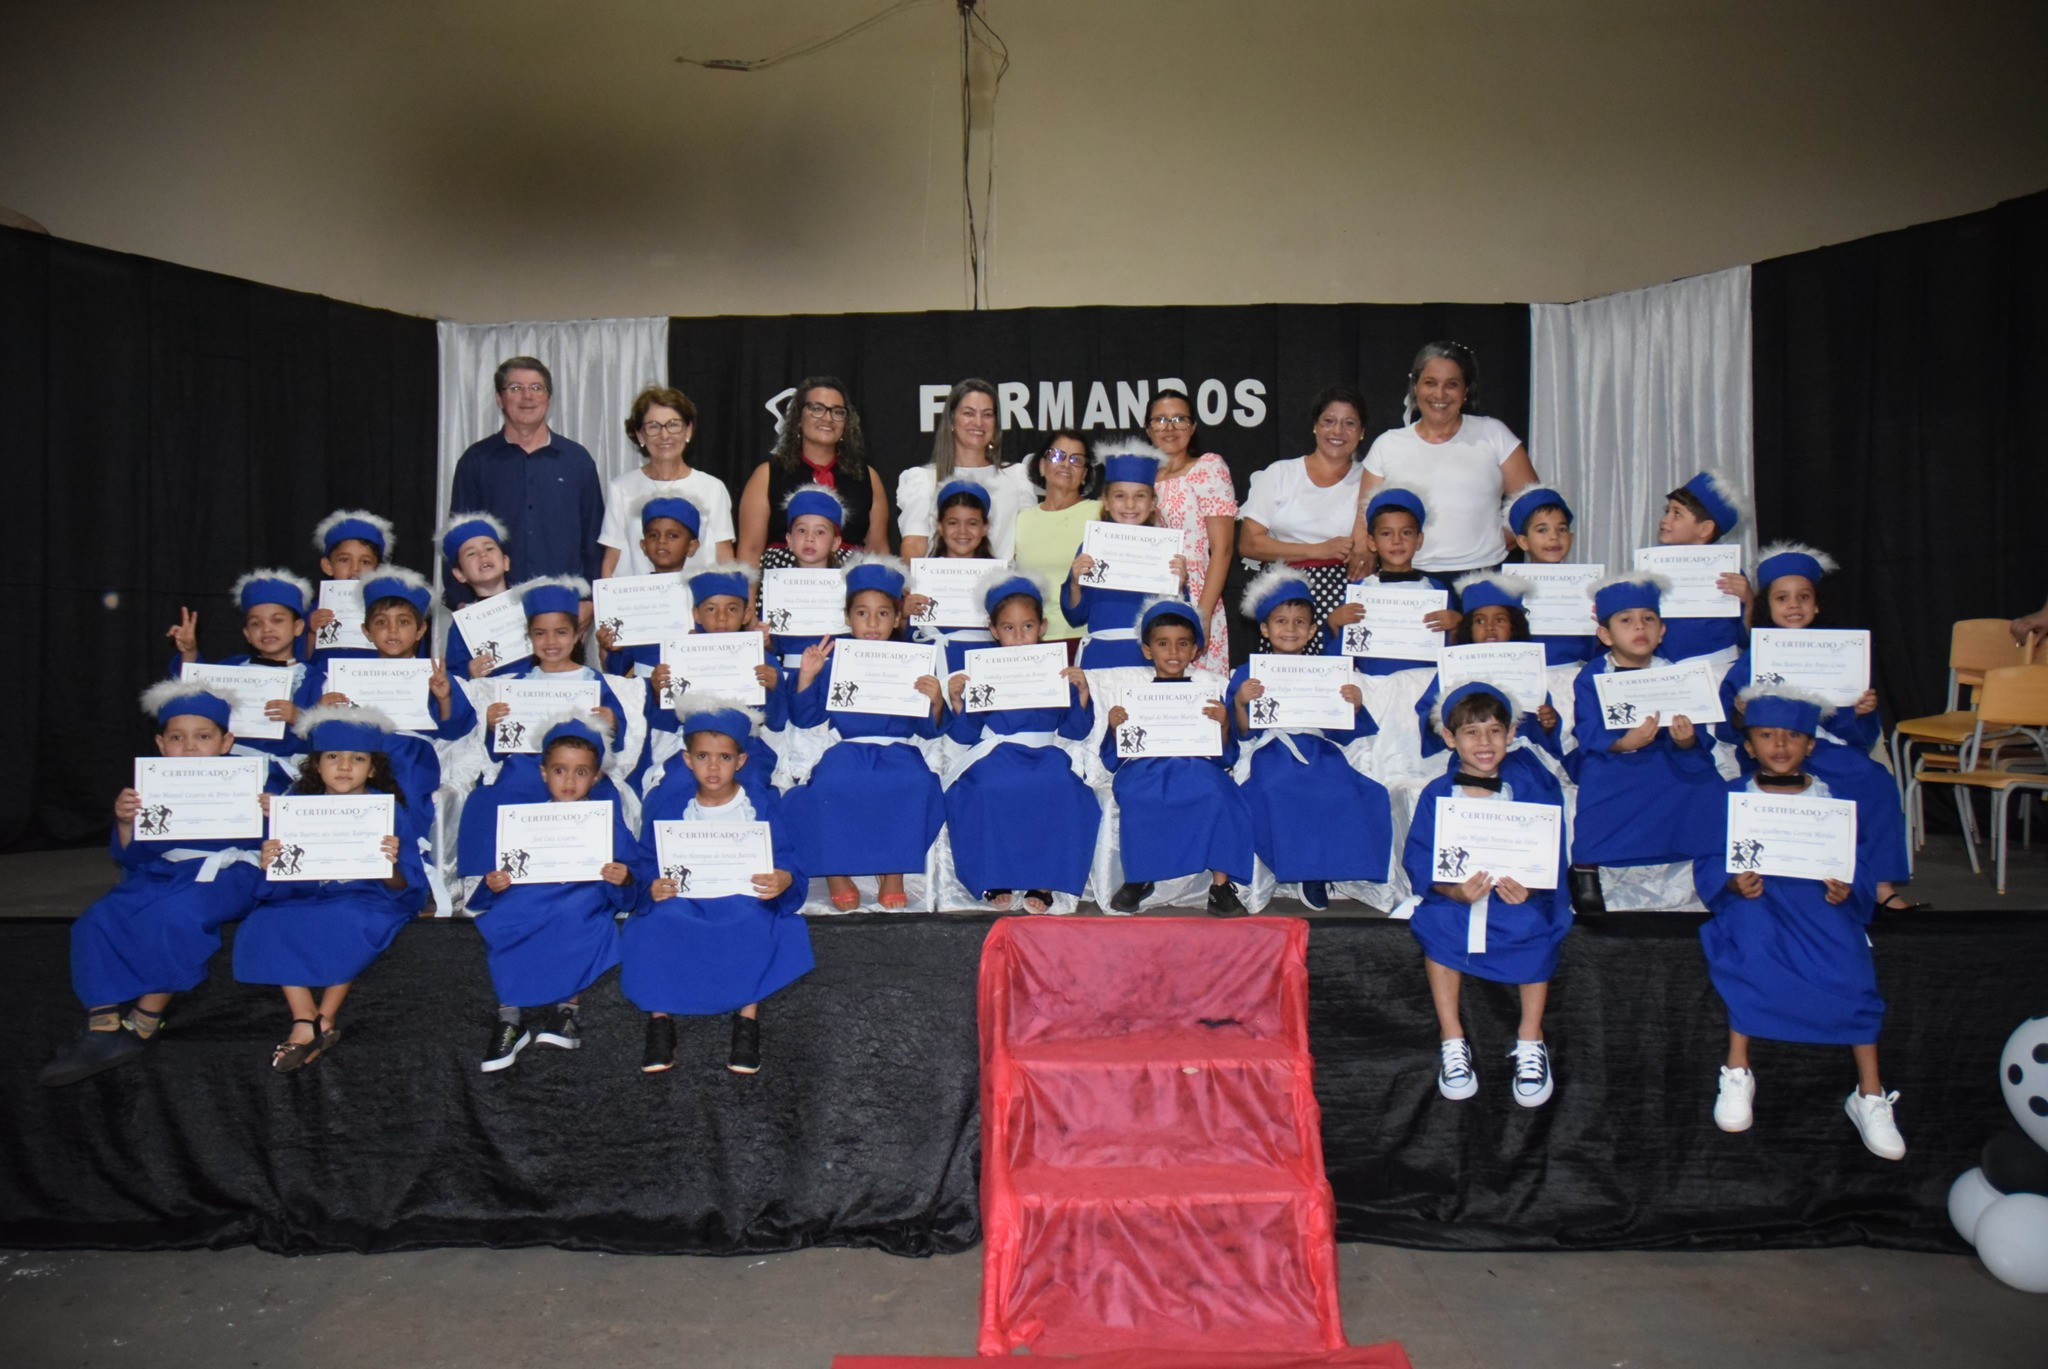 Noite de emoção e alegria marca formatura dos alunos do Pré-II da Escola Cemur, em Iguatemi